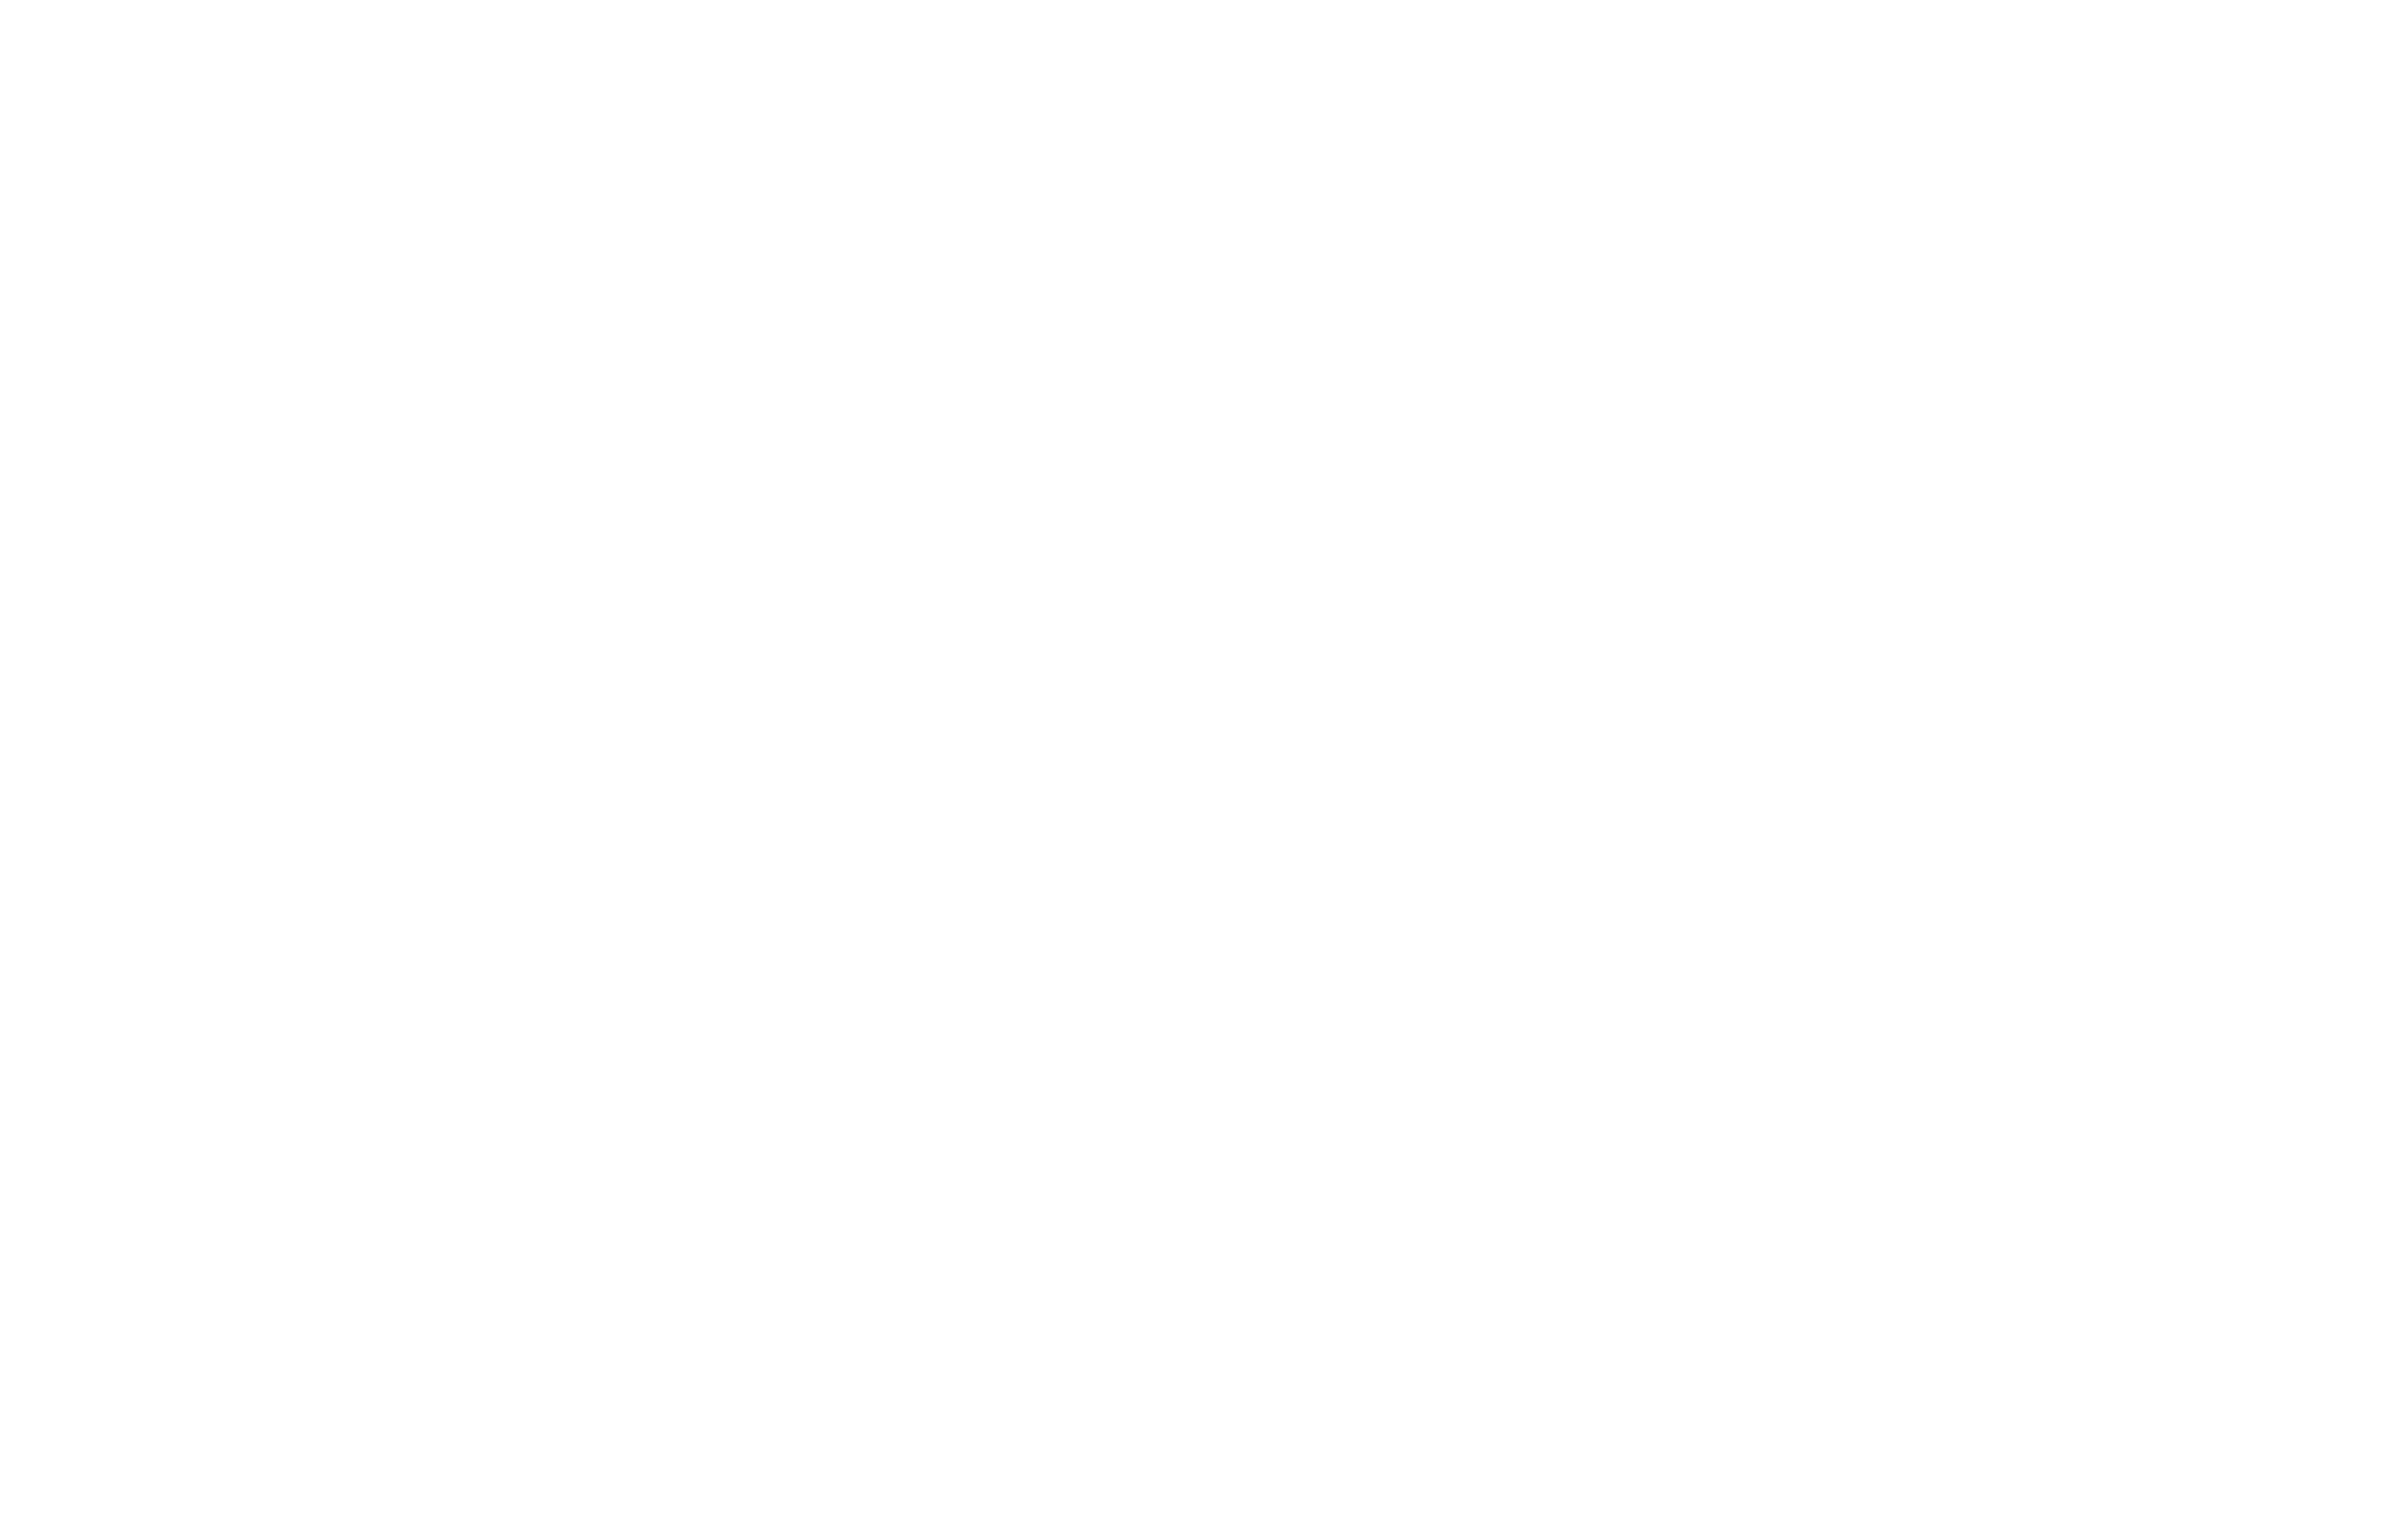 rebel financial advisors white logo